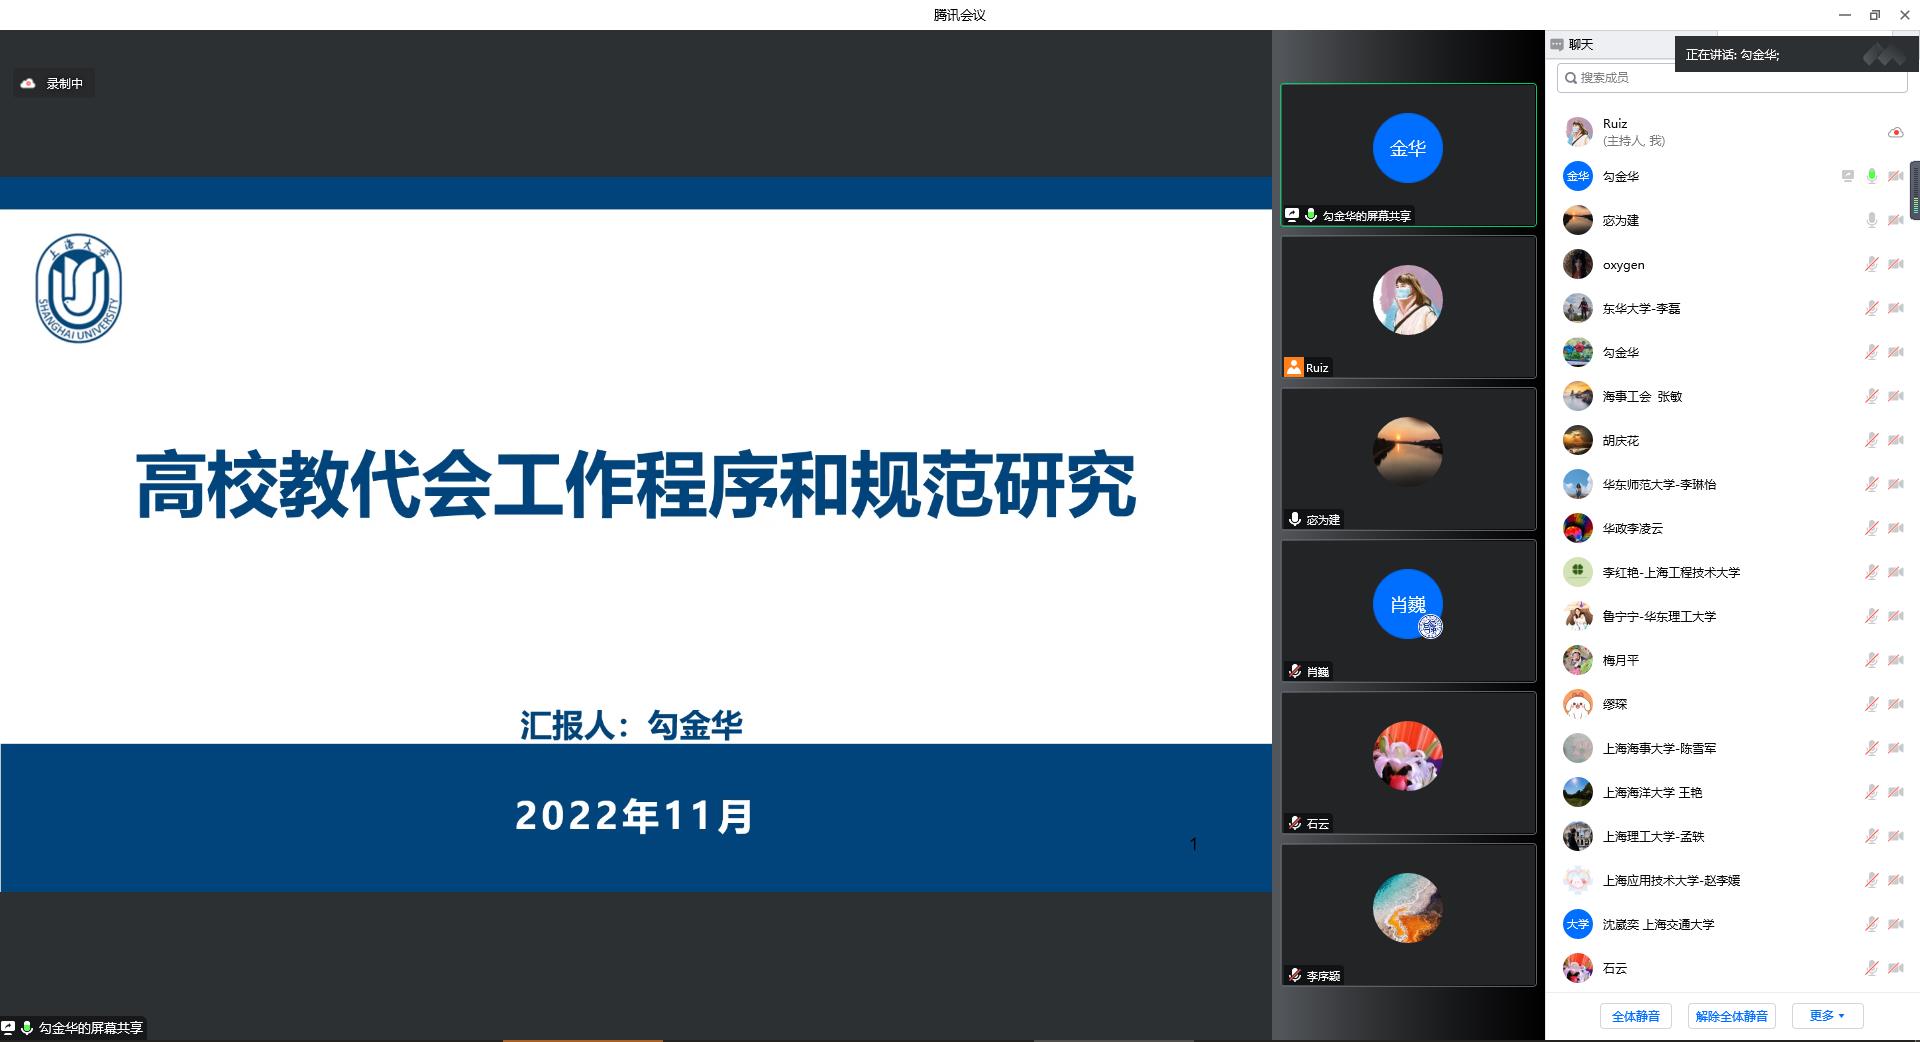 2 上海大学 勾金华课题组汇报 高校教代会工作程序和规范研究.jpg